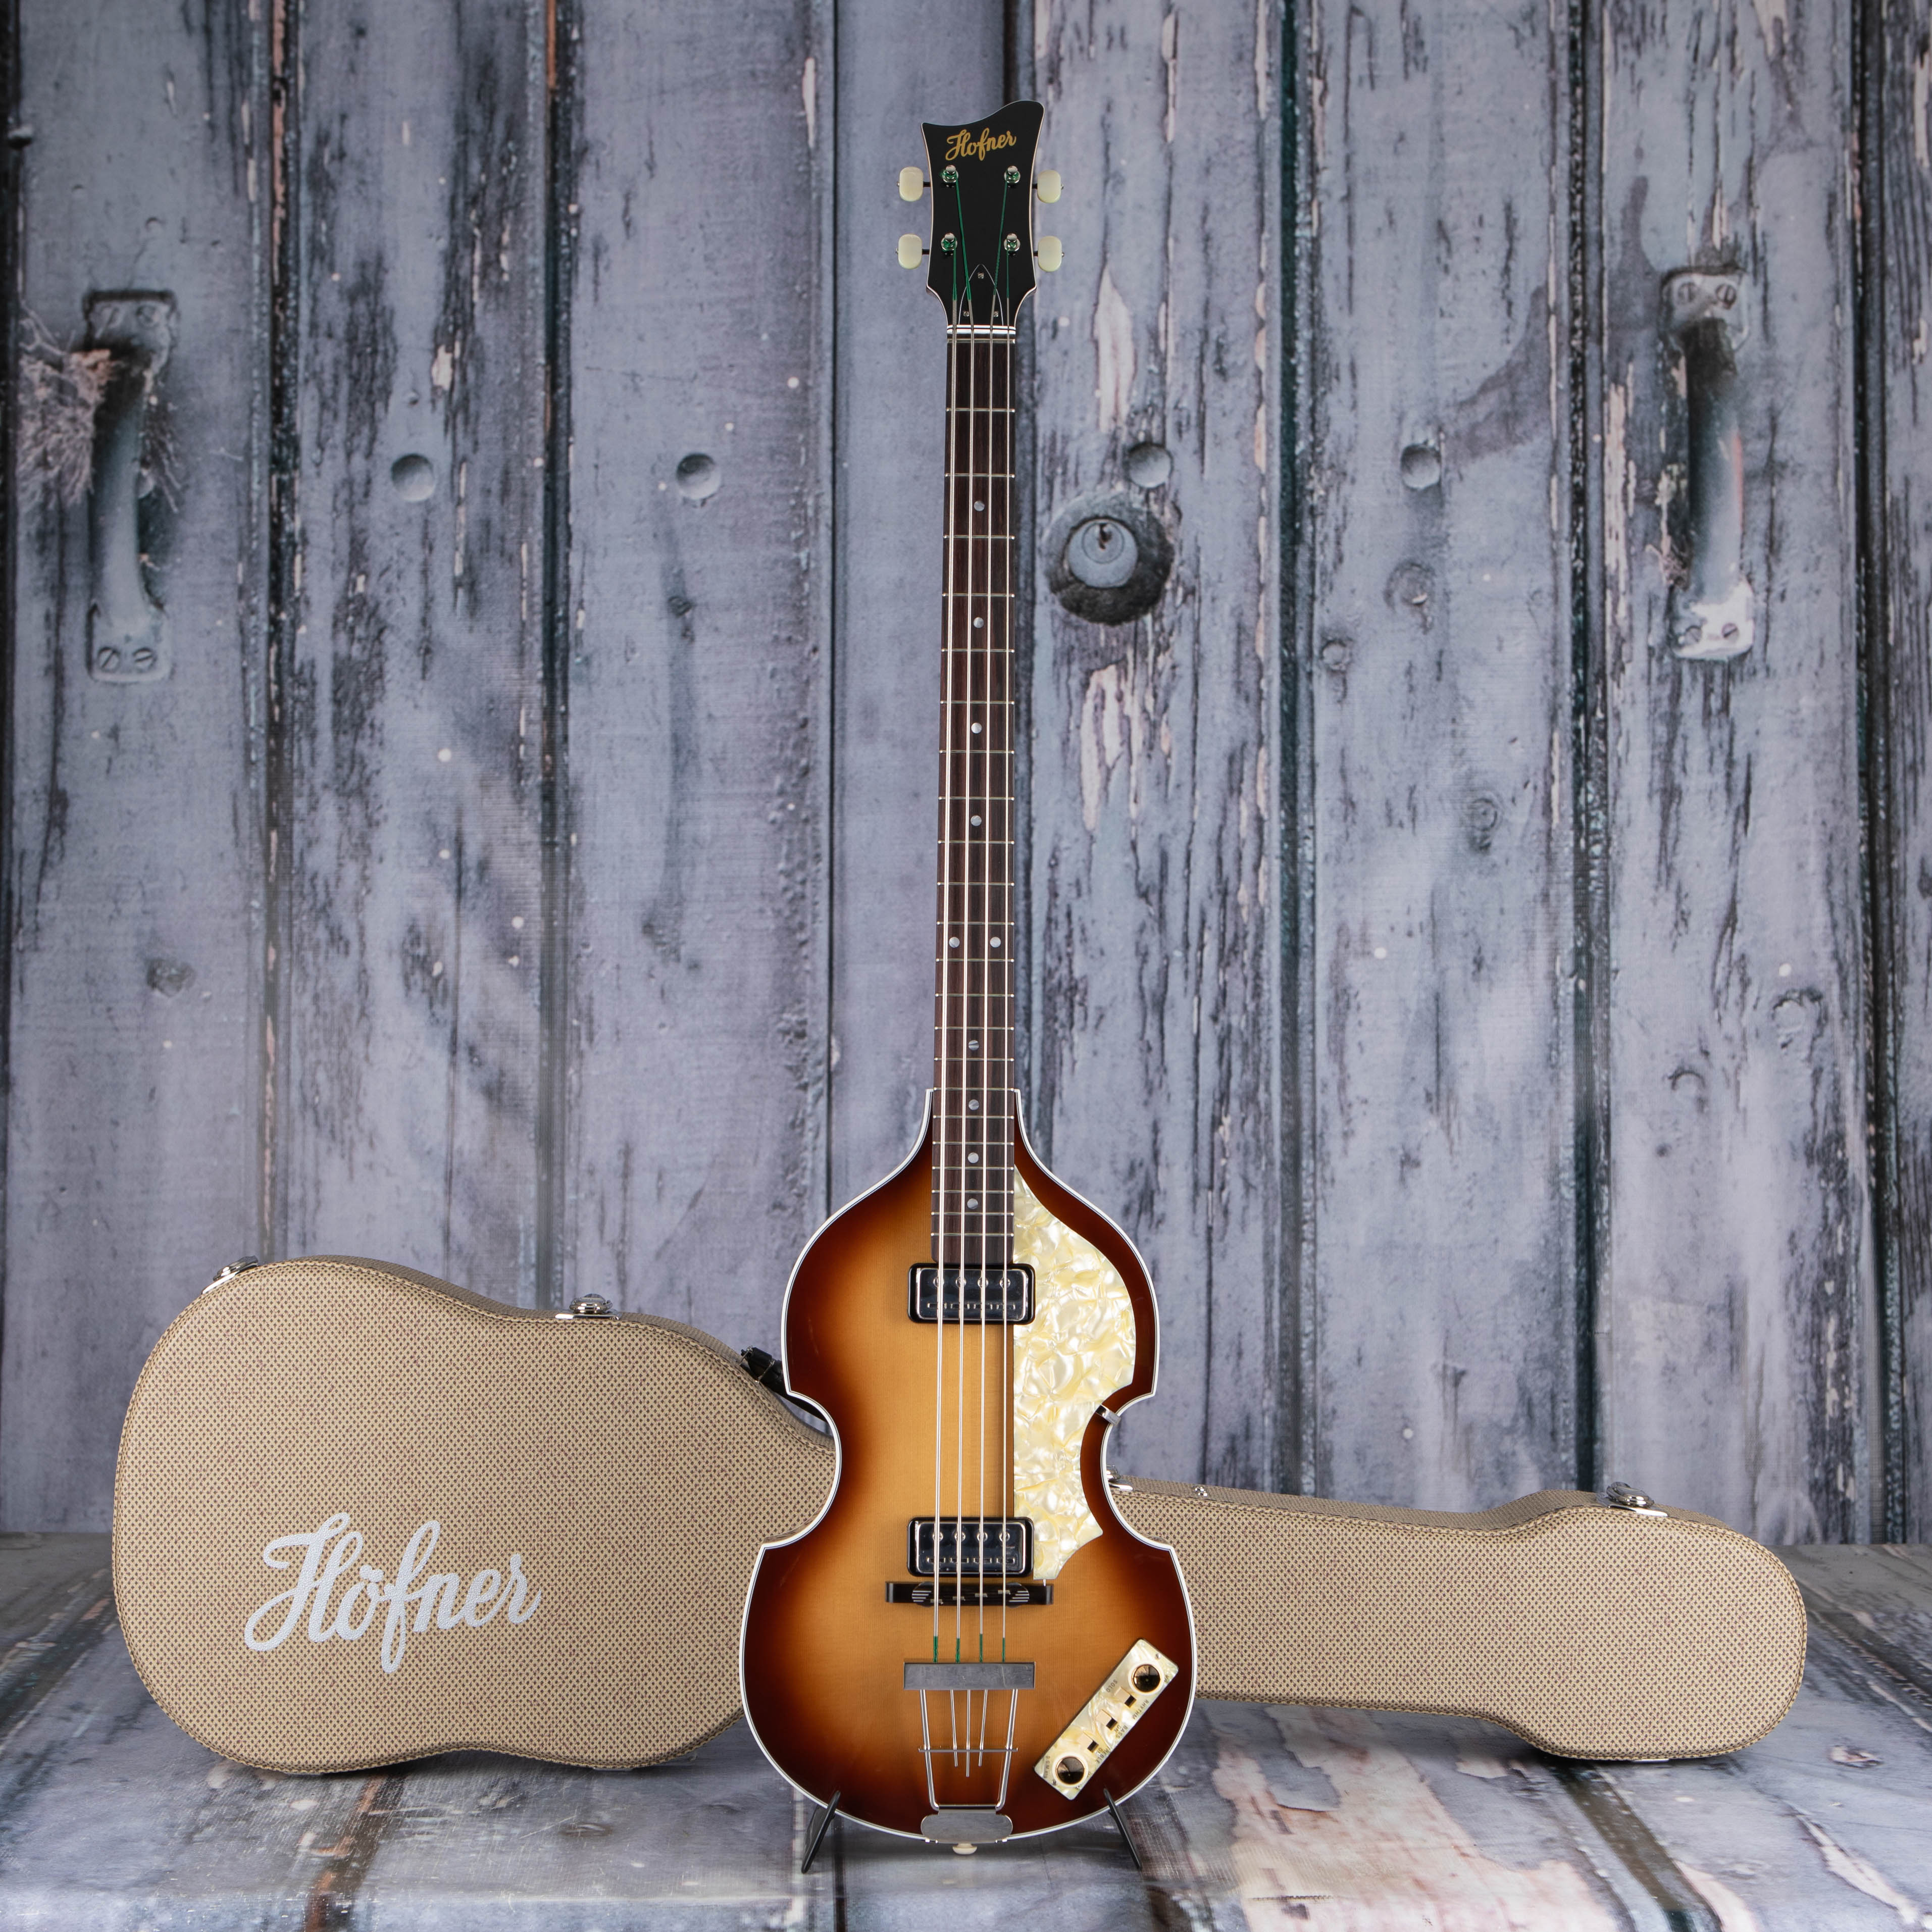 Höfner HOF-H500/1-62-O Limited Edition 1962 Reissue Violin Bass Guitar, Sunburst, case